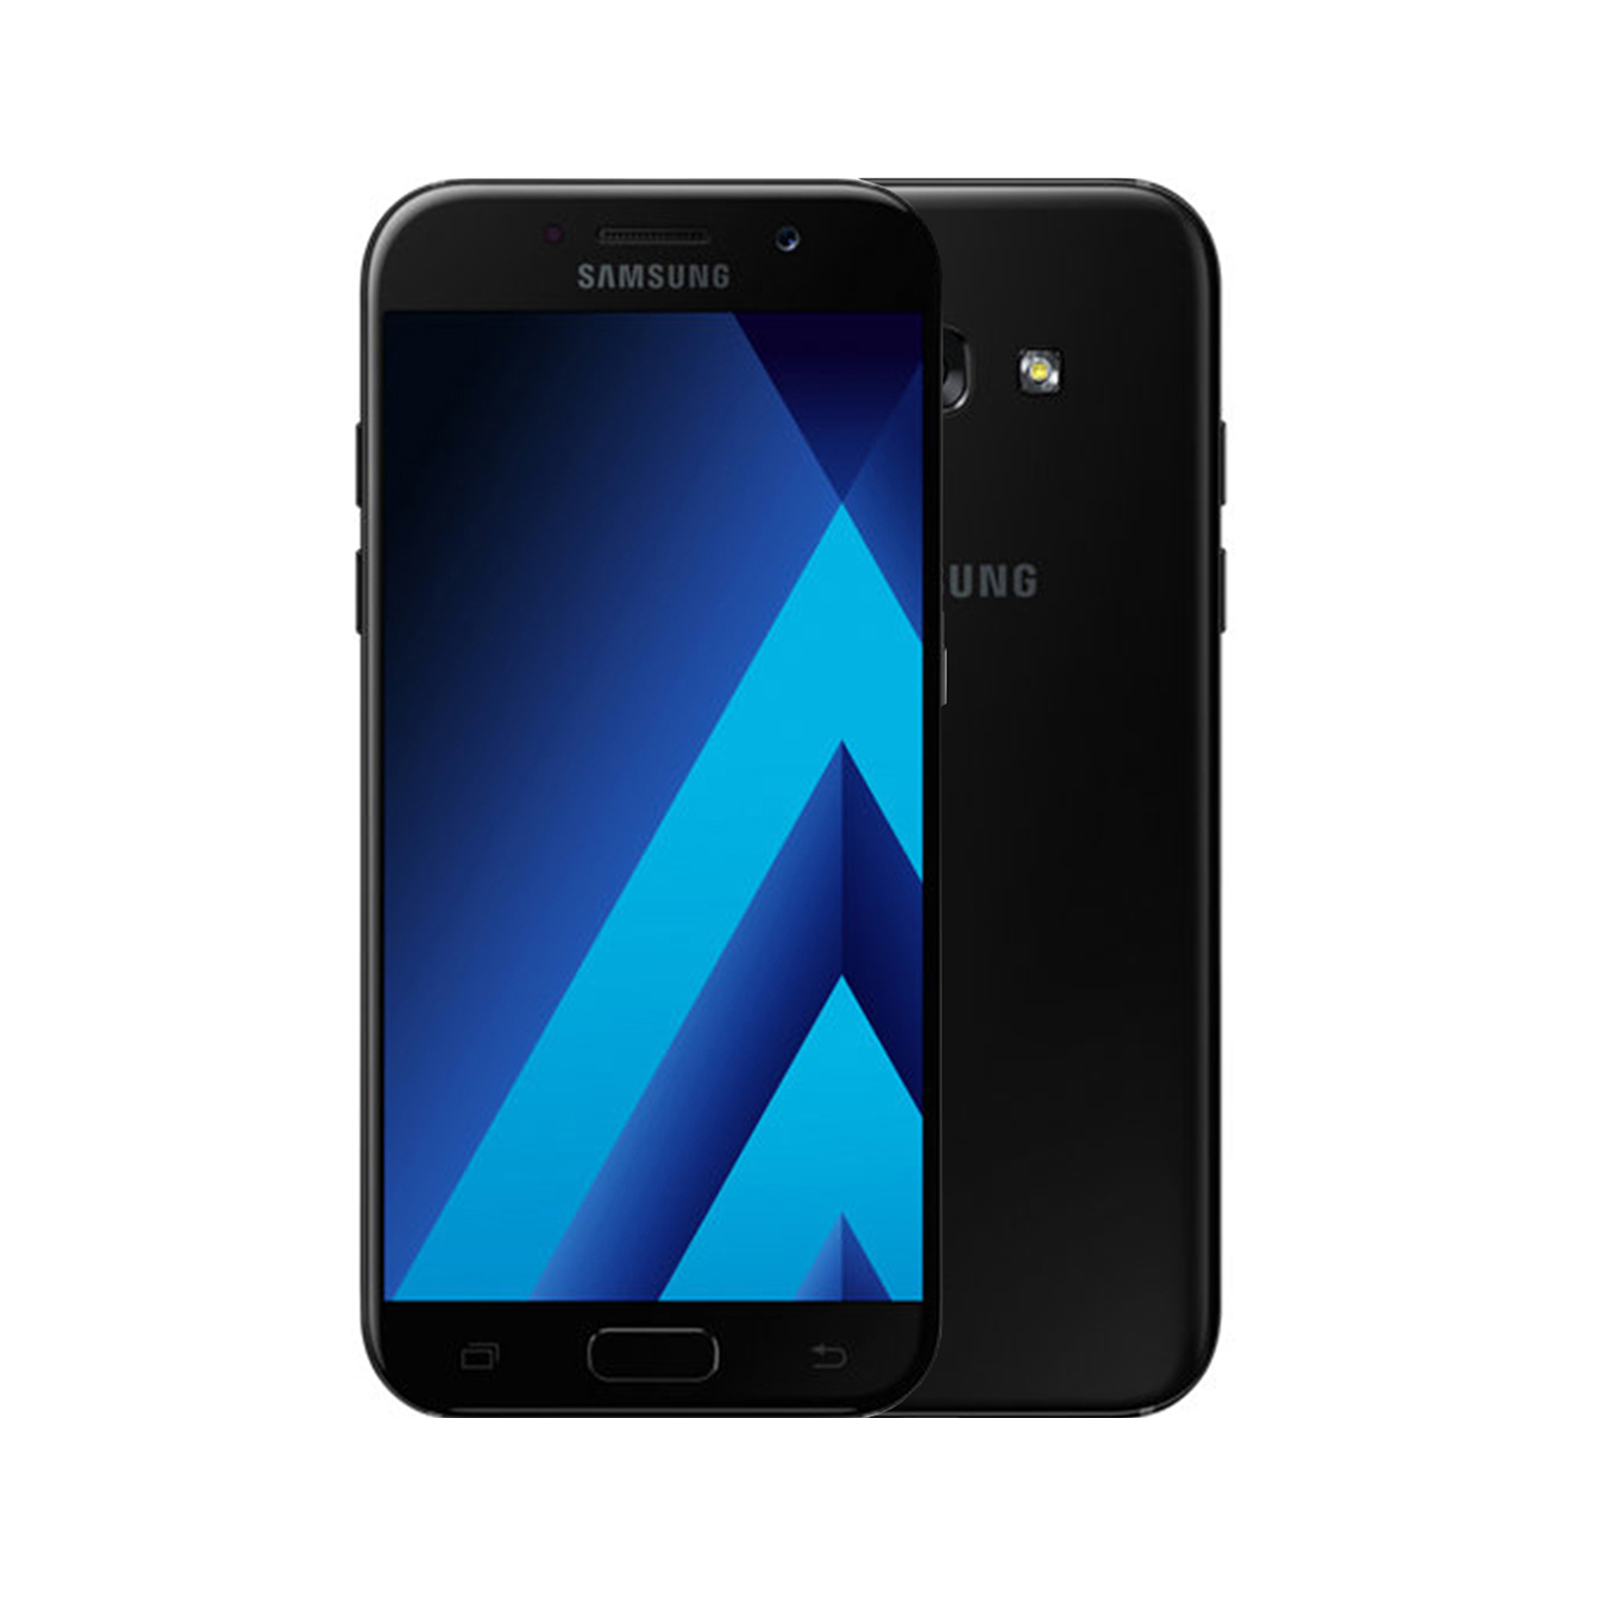 Samsung Galaxy A5 2017 A520F 32GB Black Gold Blue Peach Unlocked Smartphone